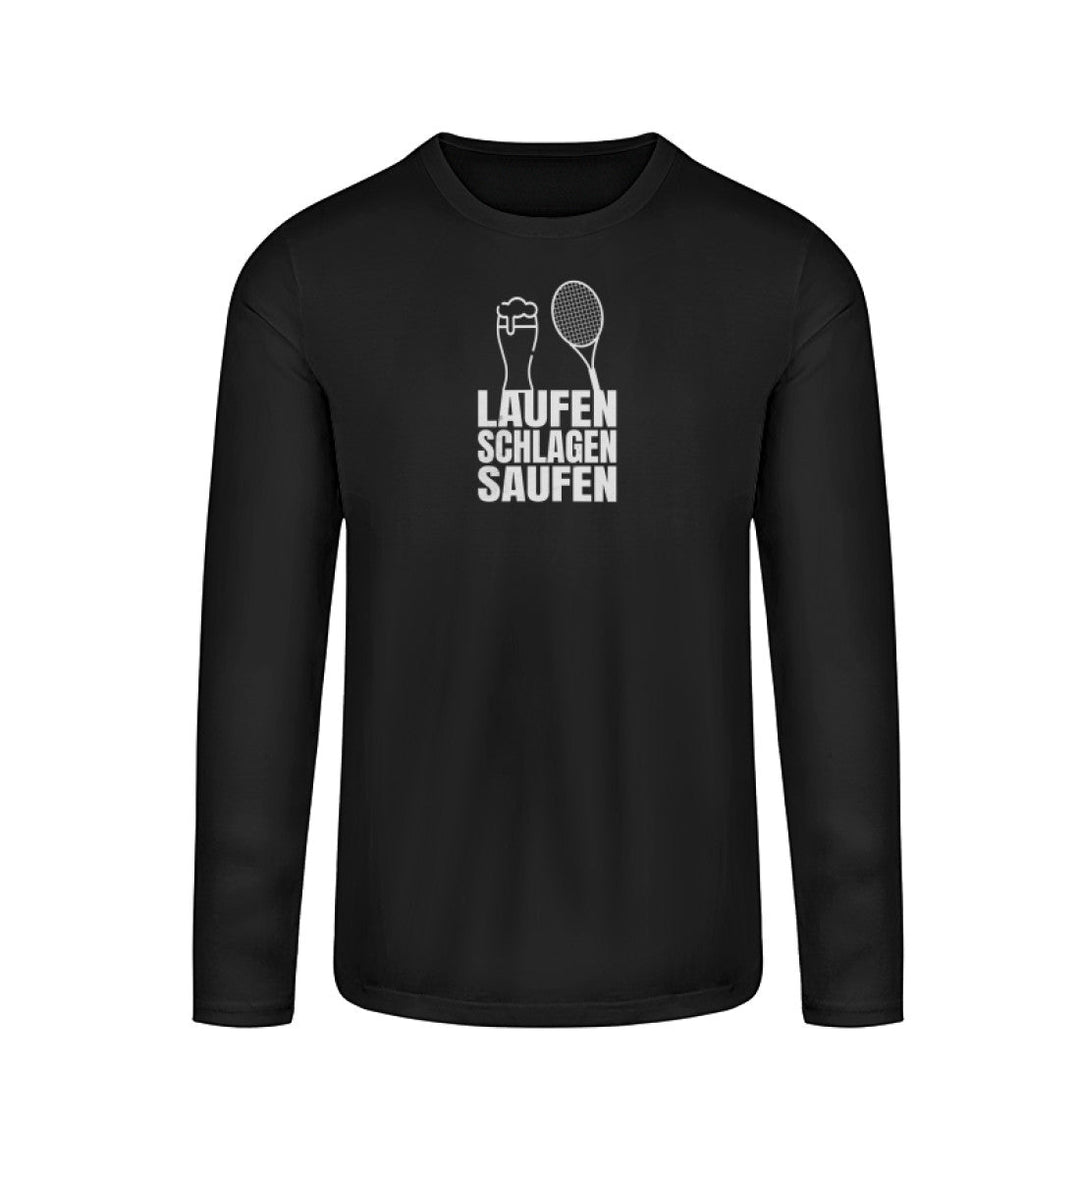 Laufen, Schlagen, Saufen | Longsleeve Unisex - Matchpoint24 - Kleidung für Tennisfans